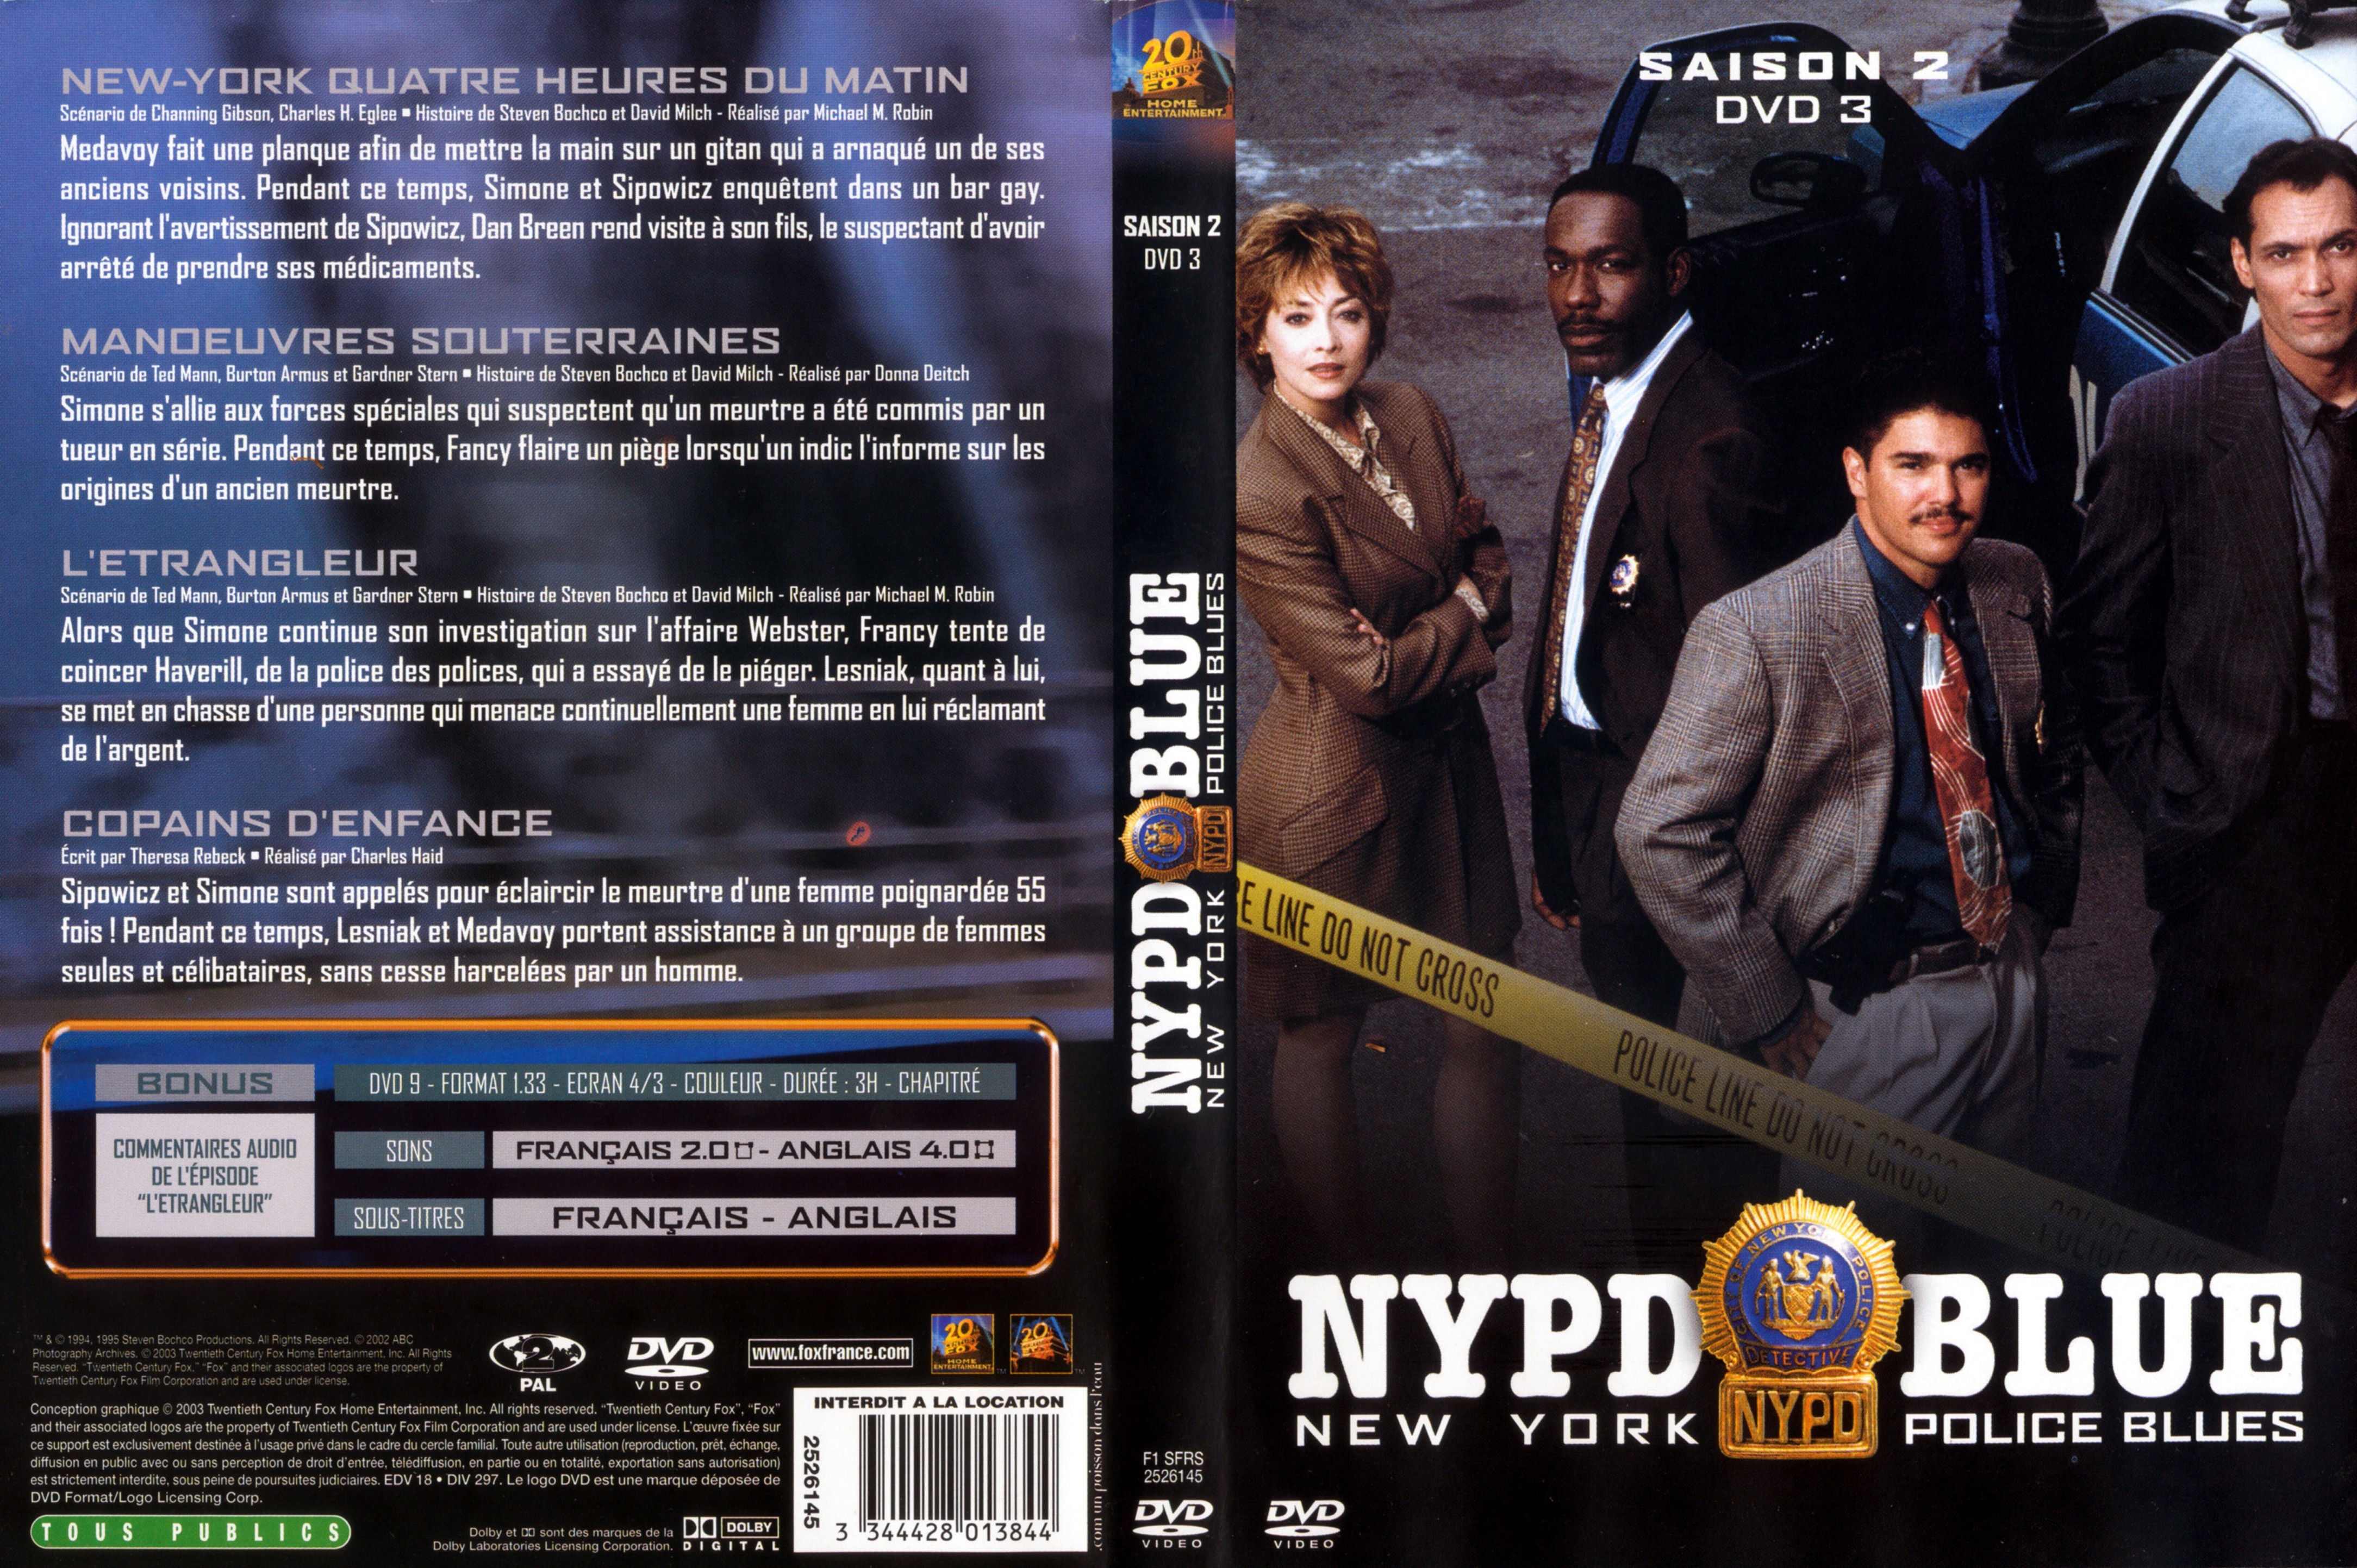 Jaquette DVD NYPD Blue saison 02 dvd 03